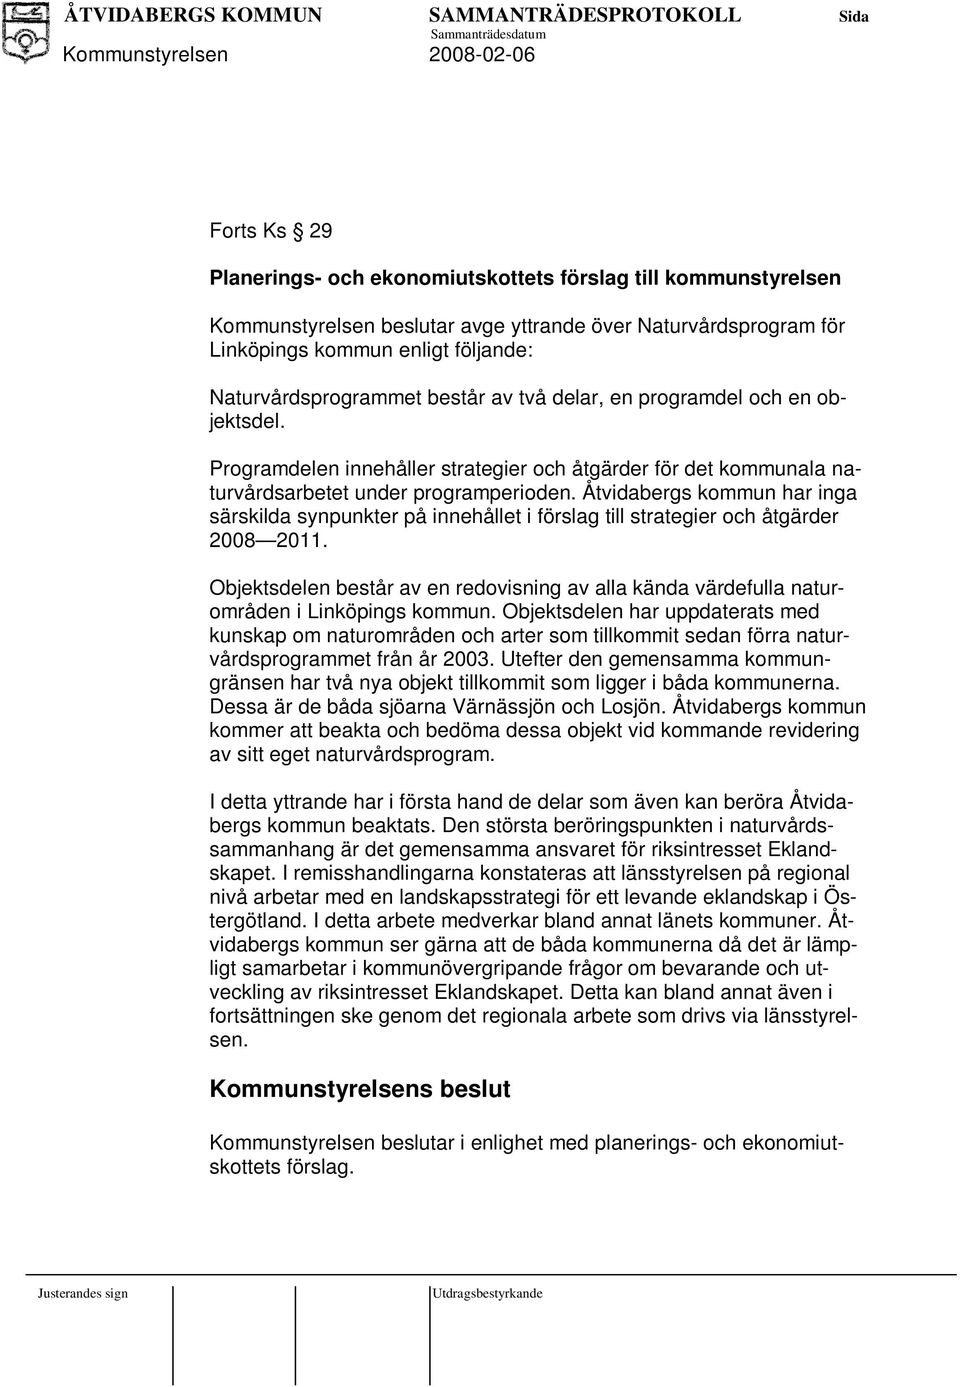 Åtvidabergs kommun har inga särskilda synpunkter på innehållet i förslag till strategier och åtgärder 2008 2011.